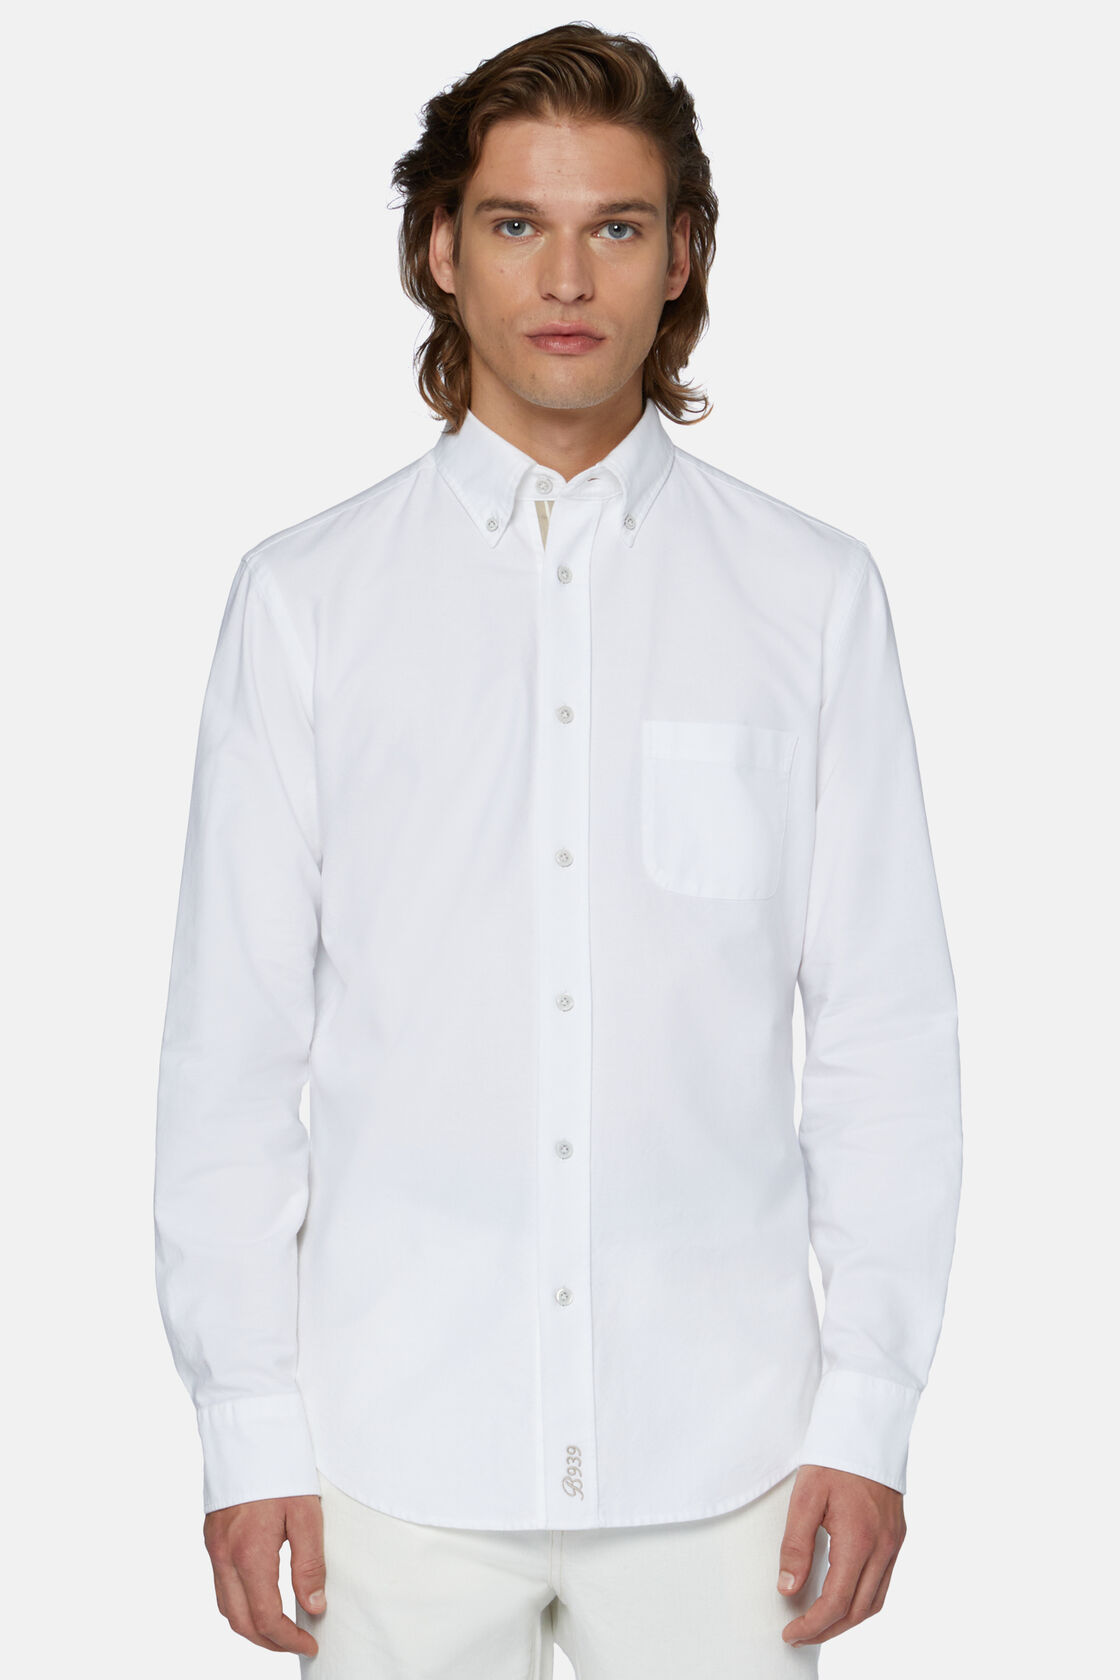 Biała koszula z bawełny organicznej typu Oksford, fason klasyczny, White, hi-res